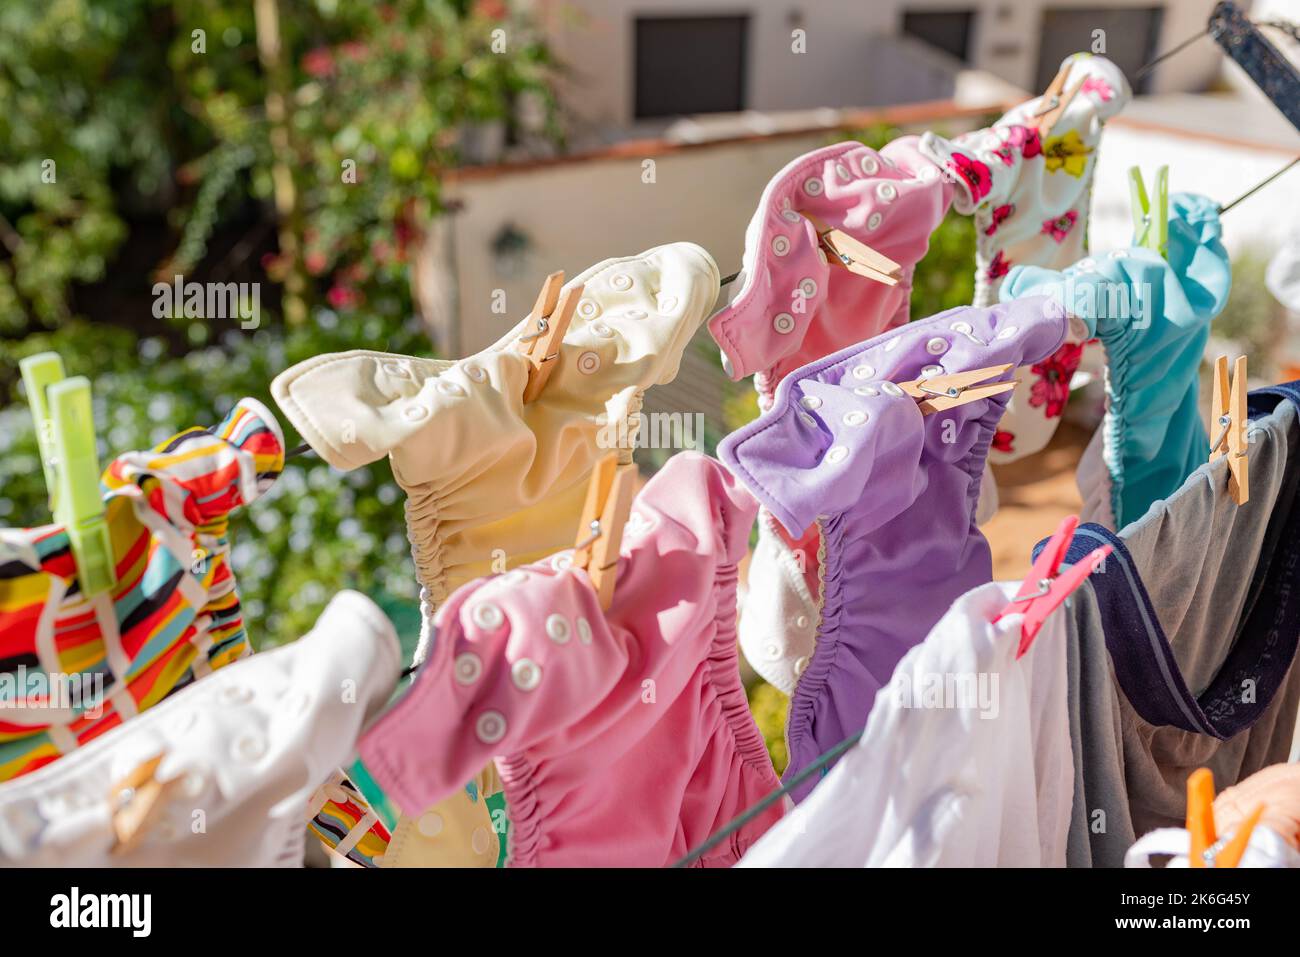 Stoffwindeln hängen beim Trocknen unter der Sonne an der Wäscheleine. Wäsche von bunten, wiederverwendbaren Windeln für Babys. Stockfoto